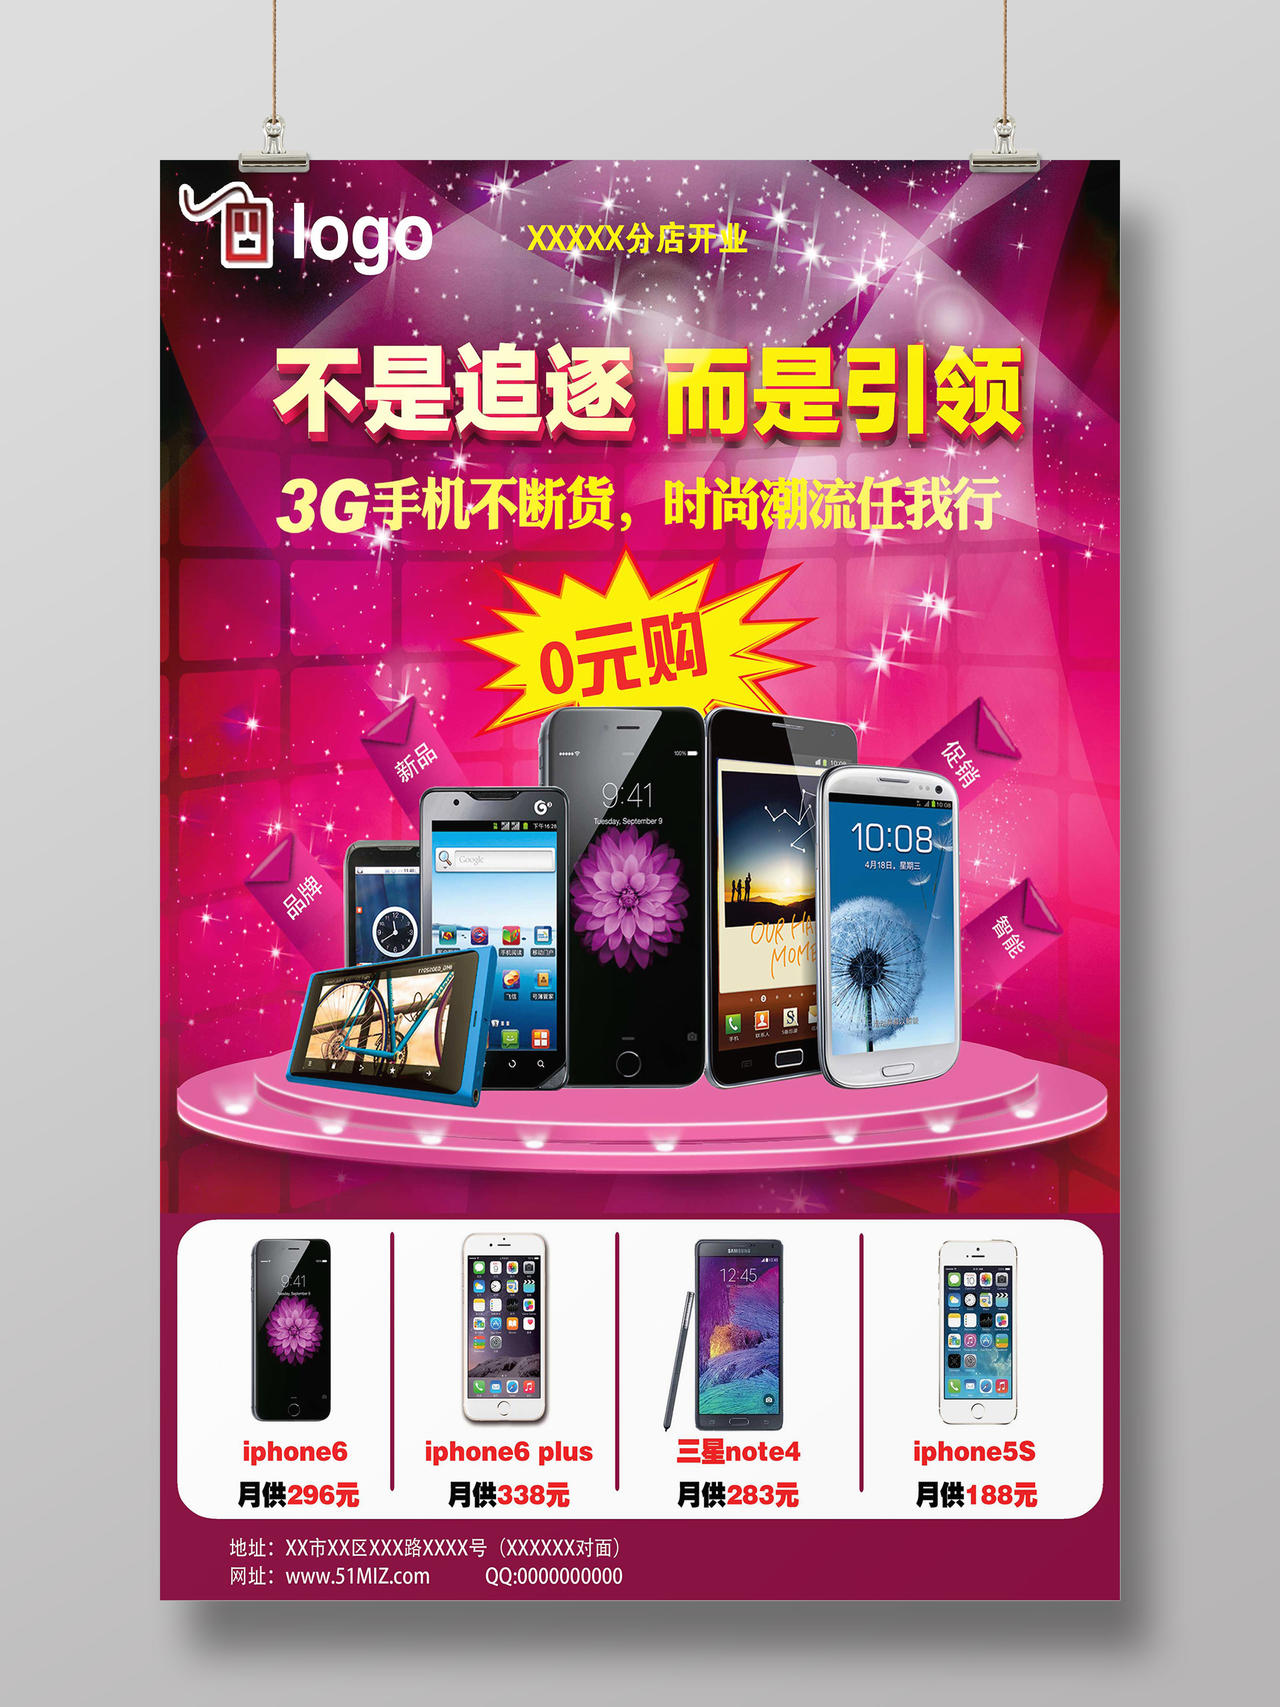 紫红色舞台风格手机实体店开业宣传单海报